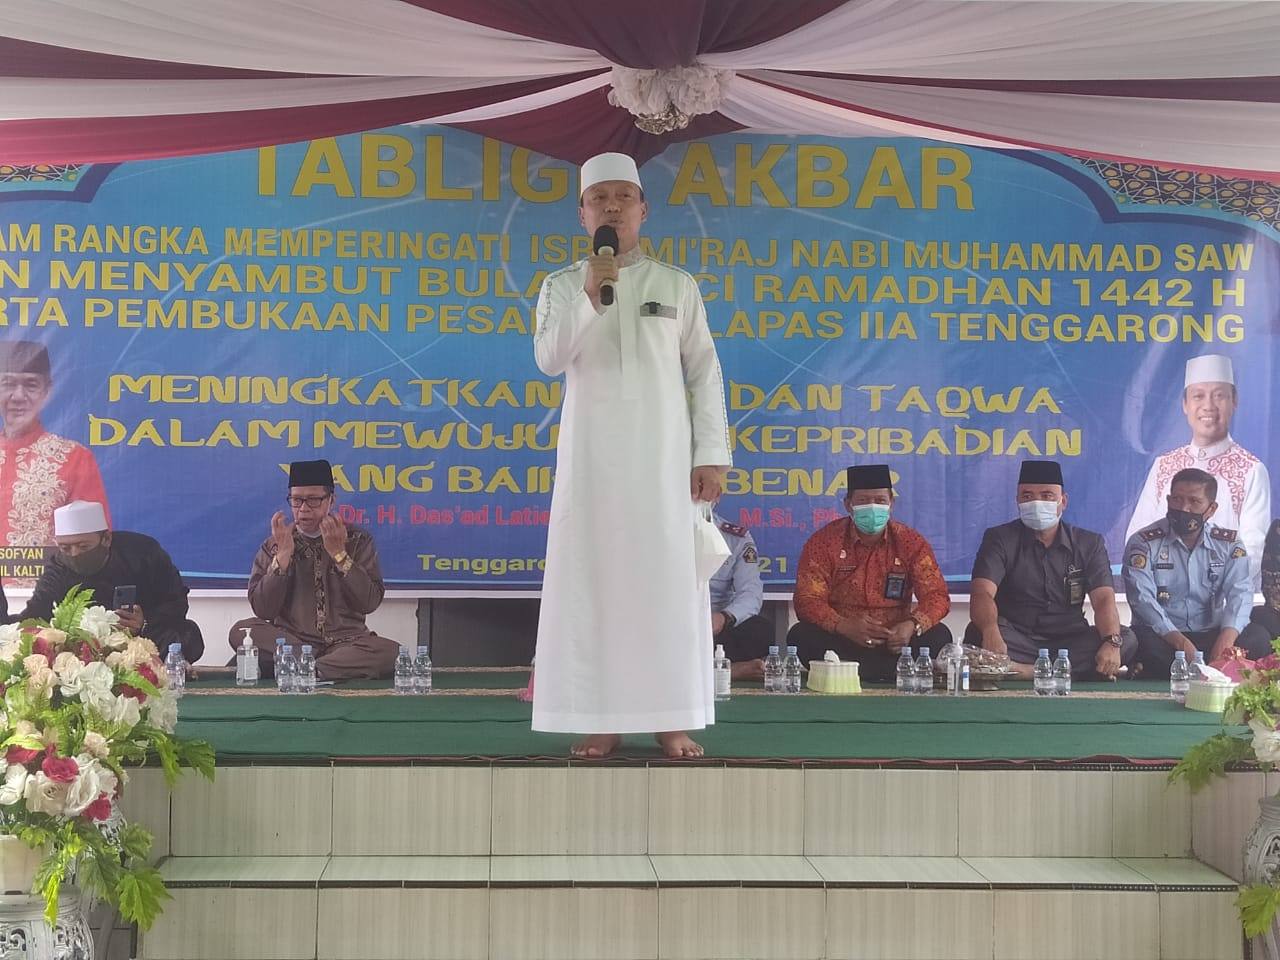 Gelar Tabligh Akbar dan Peresmian Pesantren di Lapas Tenggarong, Warga Binaan  Belajar Ilmu Agama